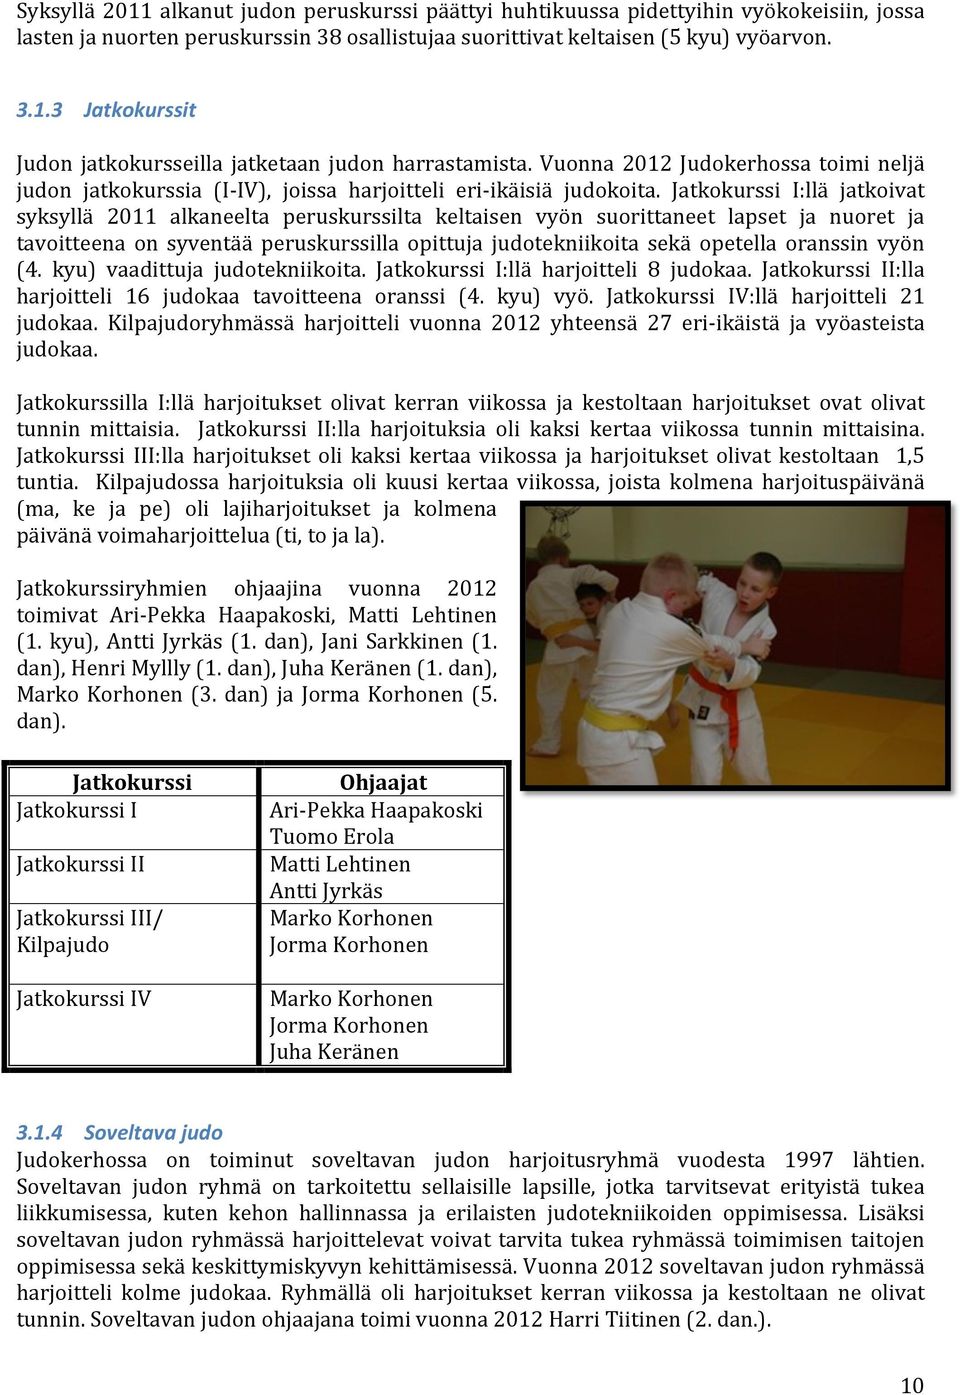 Jatkokurssi I:llä jatkoivat syksyllä 2011 alkaneelta peruskurssilta keltaisen vyön suorittaneet lapset ja nuoret ja tavoitteena on syventää peruskurssilla opittuja judotekniikoita sekä opetella